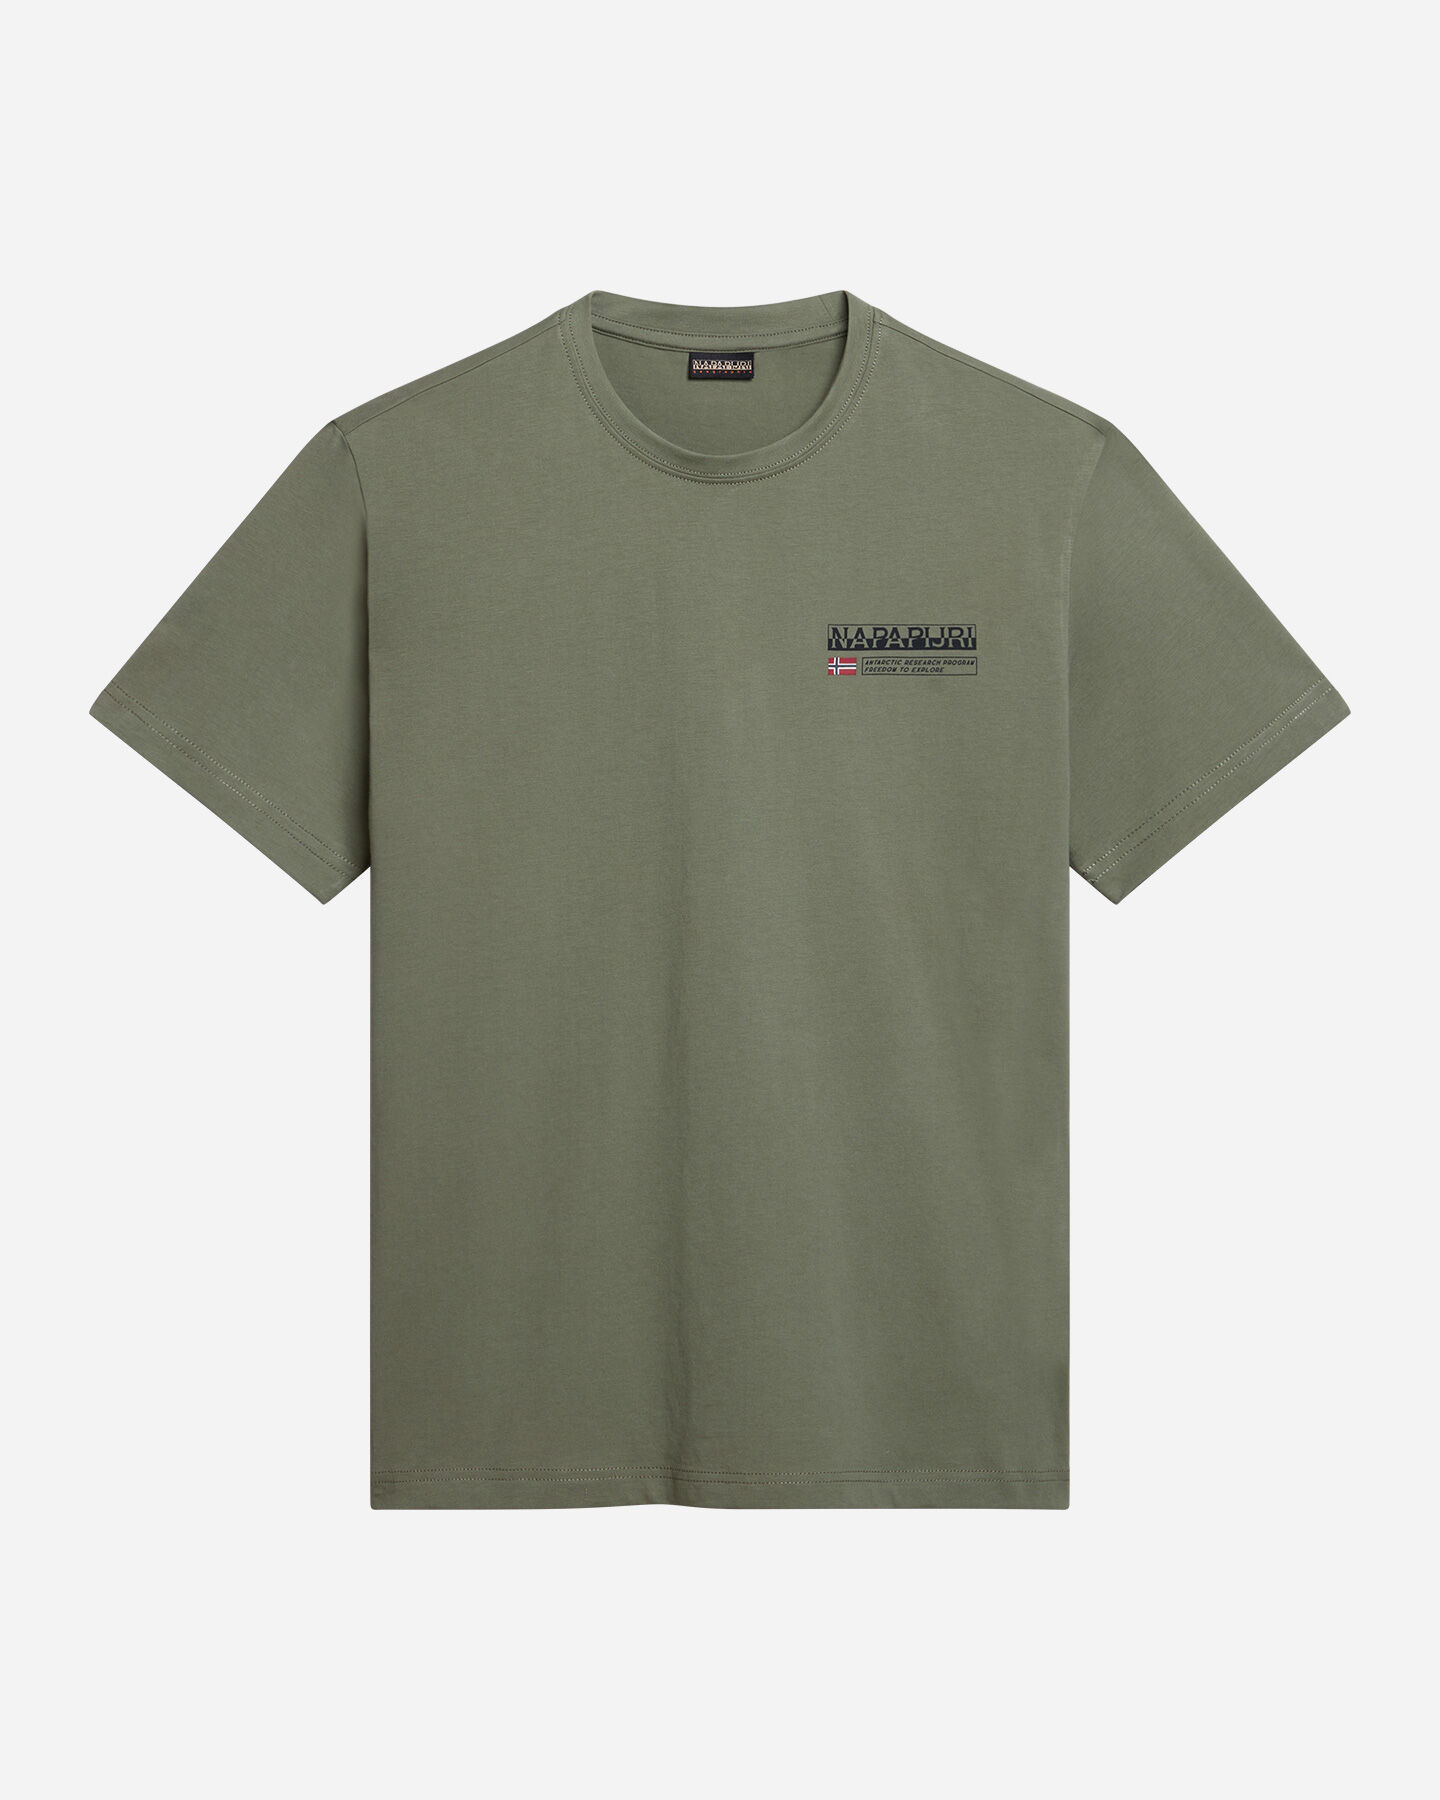  T-Shirt NAPAPIJRI KASBA M S4131567|GAE|S scatto 0